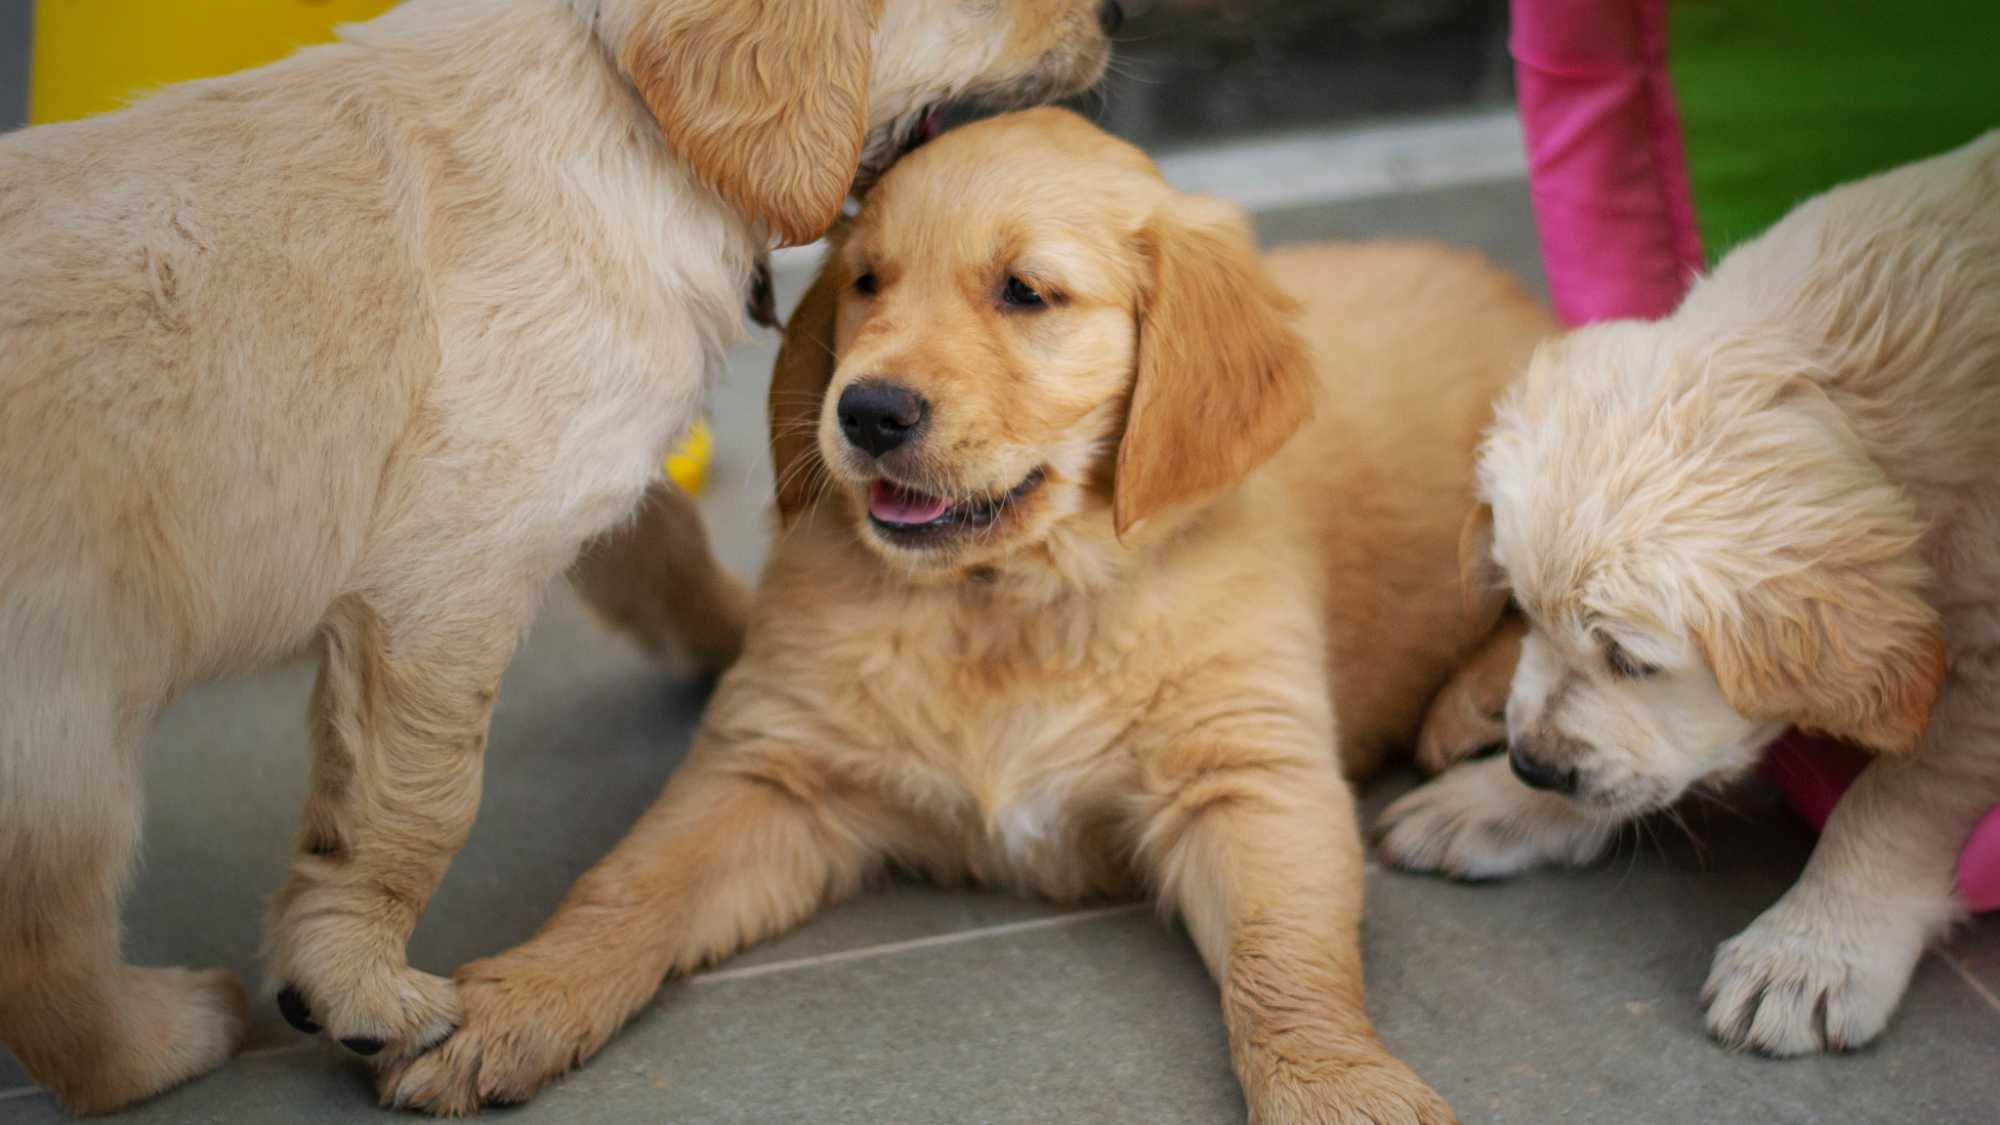 Playful pups